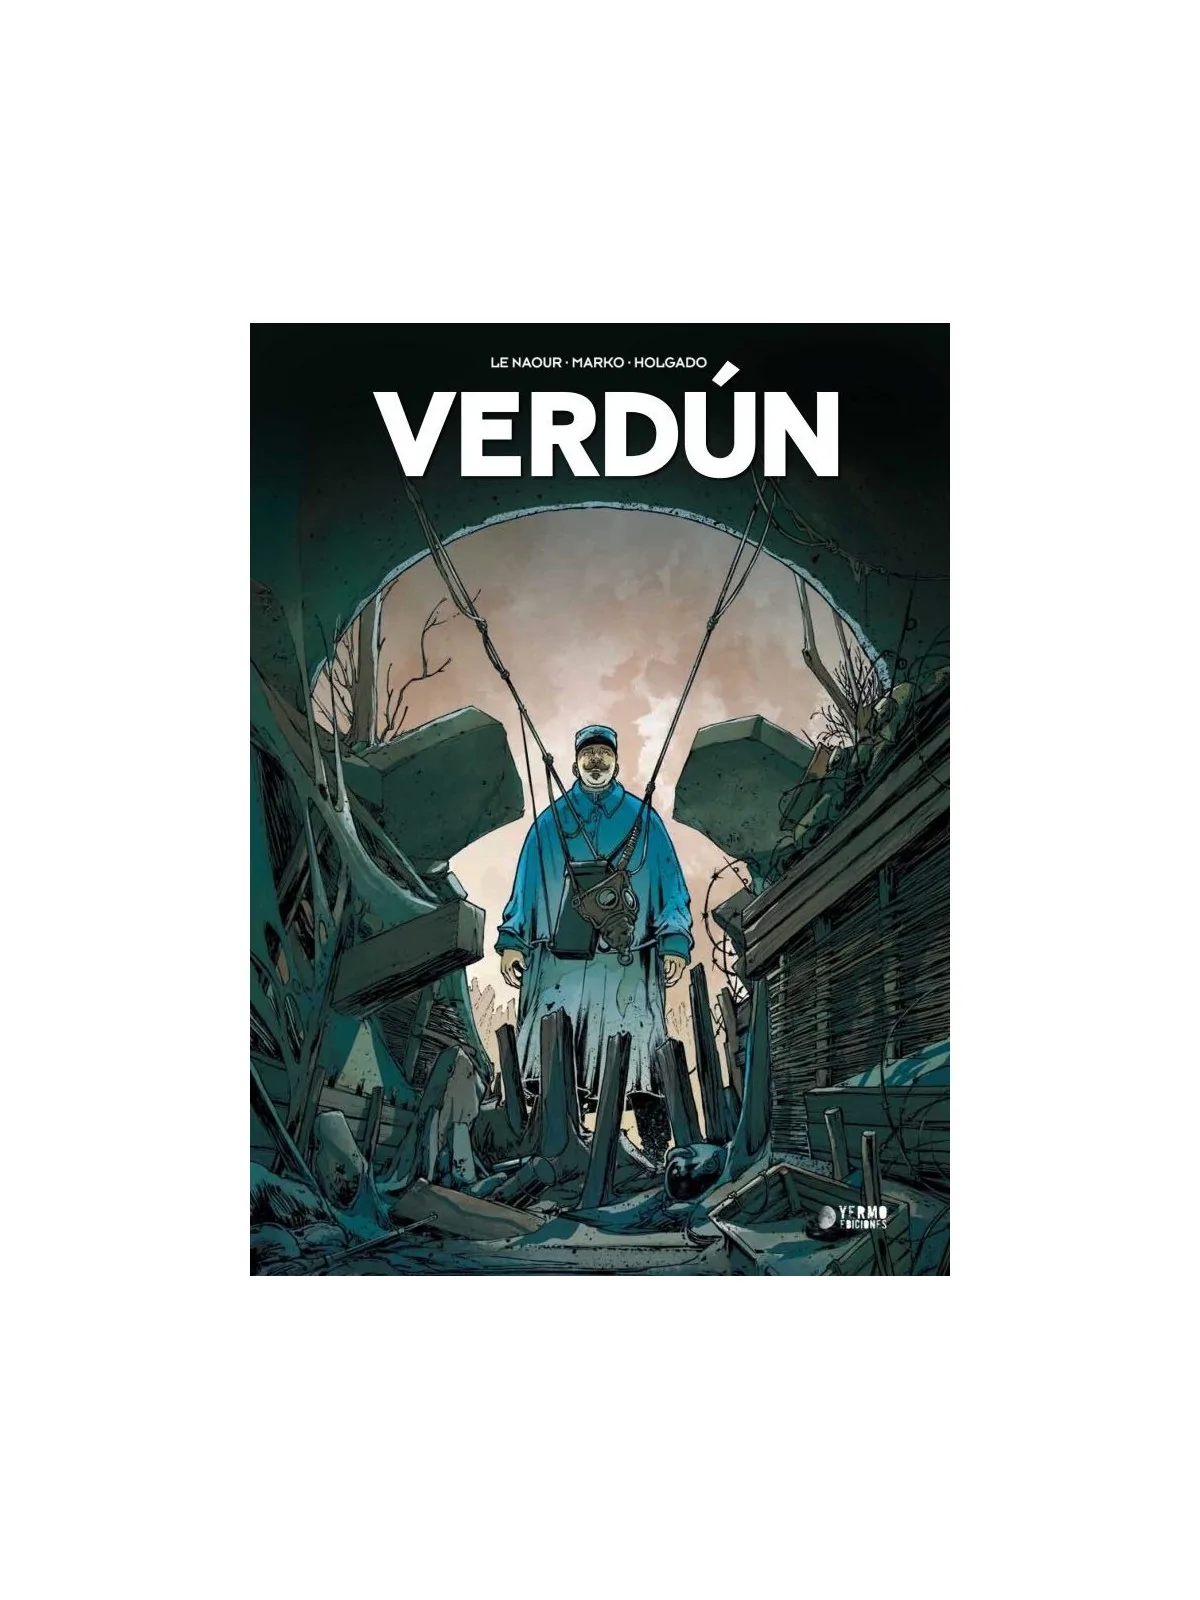 Comprar Verdún 01 (2a Edición) barato al mejor precio 22,80 € de Yermo